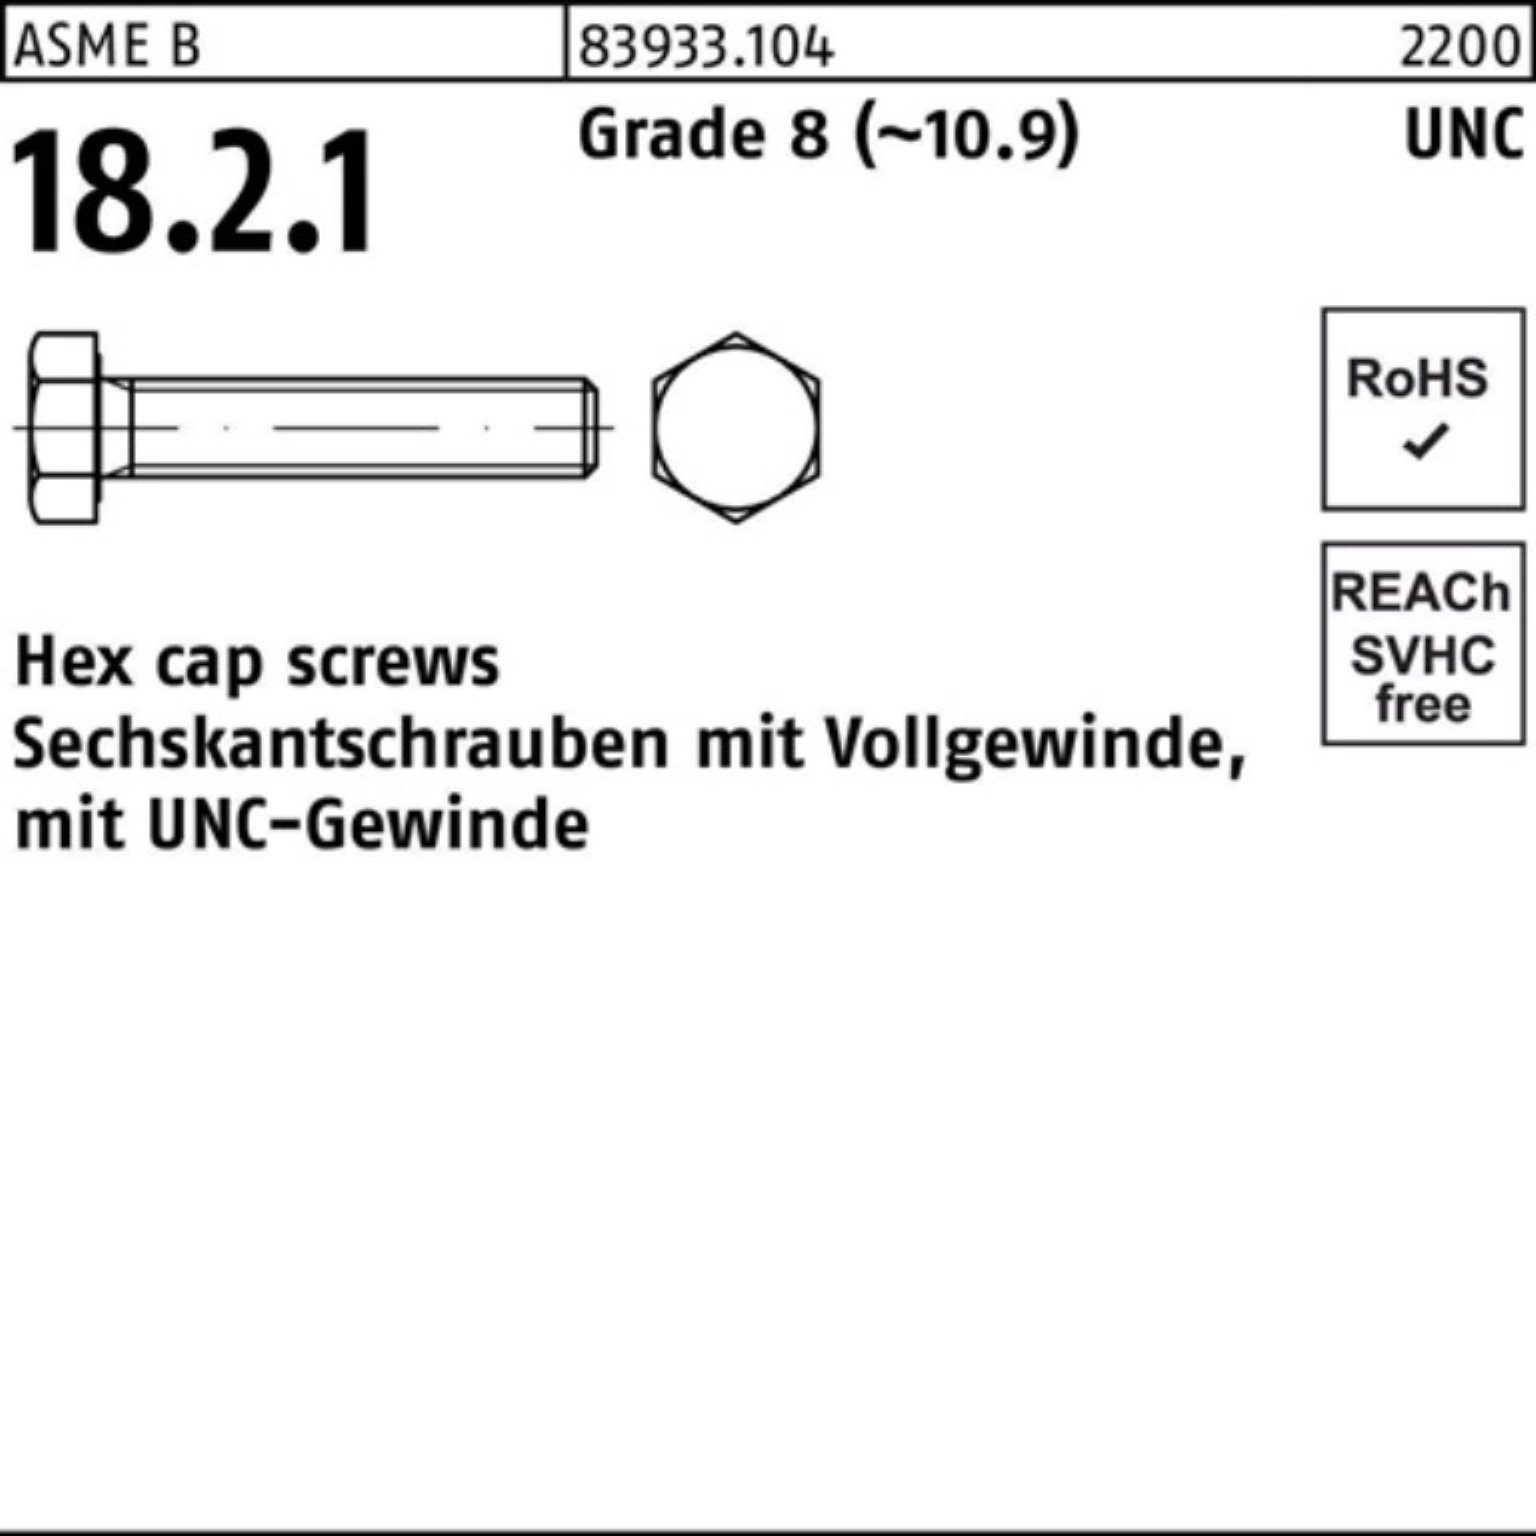 Reyher Sechskantschraube 100er Pack Sechskantschraube R 83933 UNC-Gewinde VG 1/2x 1 1/4 Grade 8